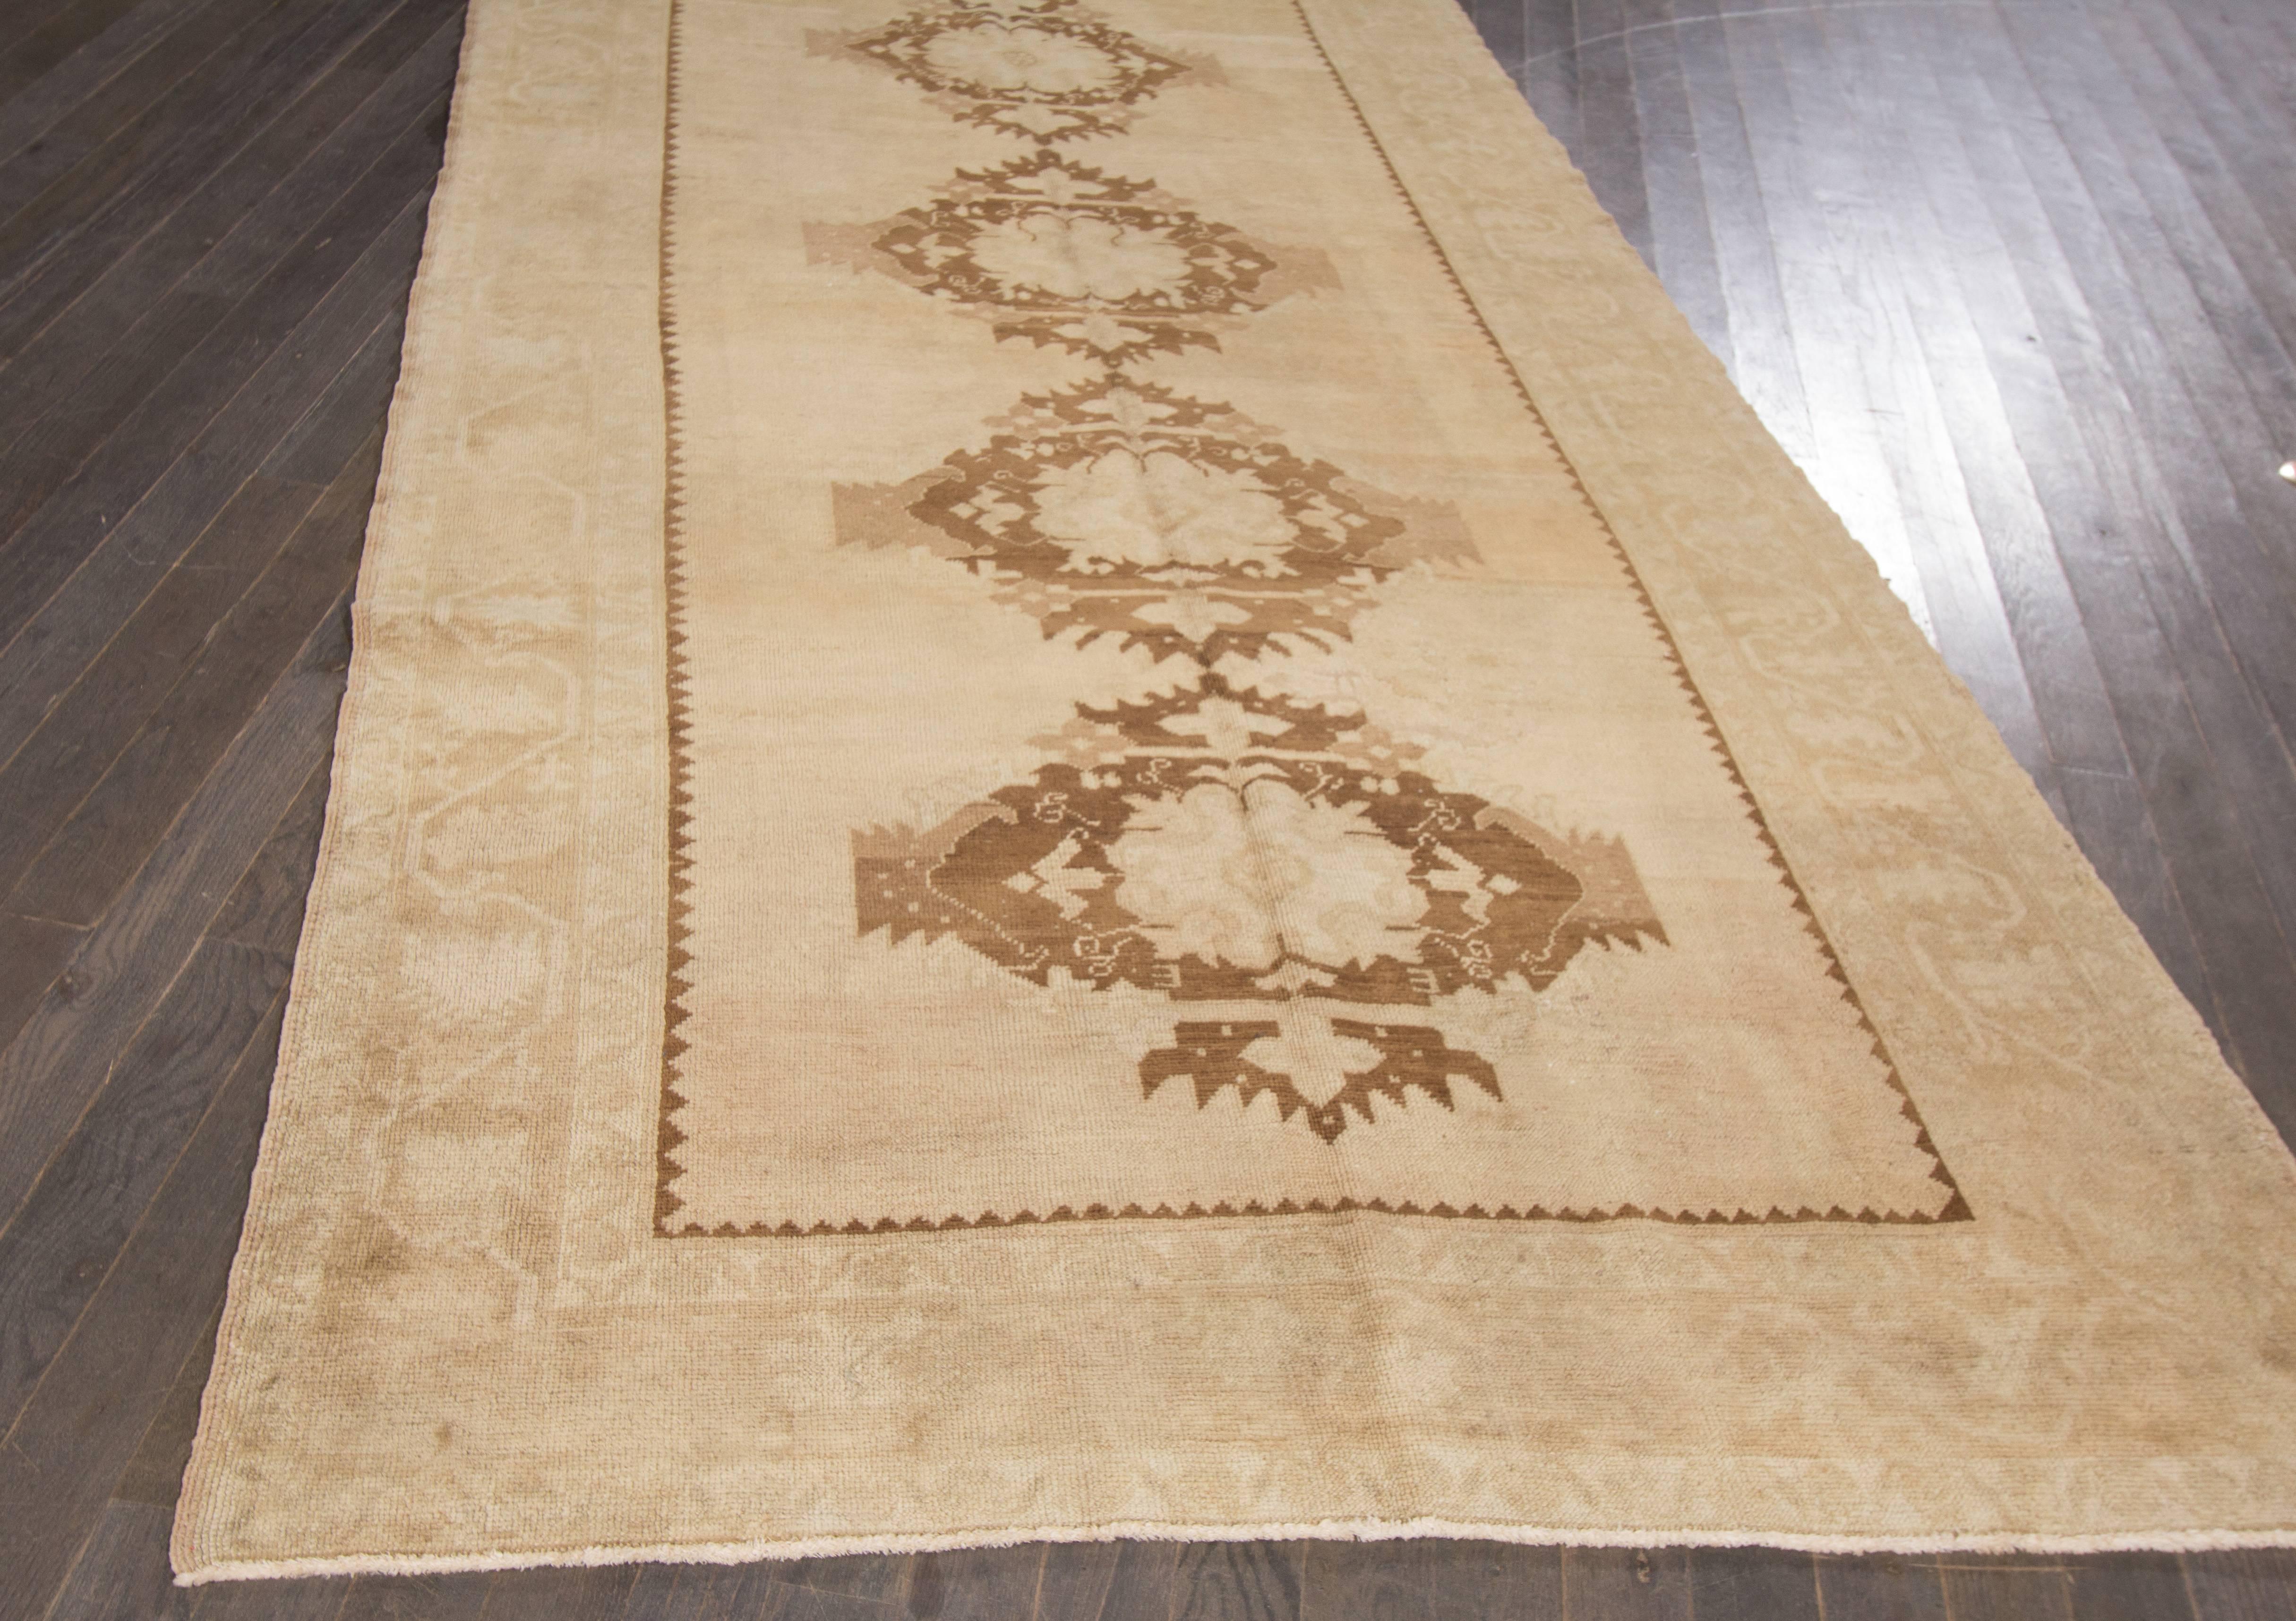 Ce magnifique tapis antique Khotan à motifs noués à la main rendra votre sol splendide. Cette collection est réalisée en laine. Ses mesures sont : 5'.2 x 10'.6
Ce tapis antique de Khotan a été fabriqué au Turkestan.